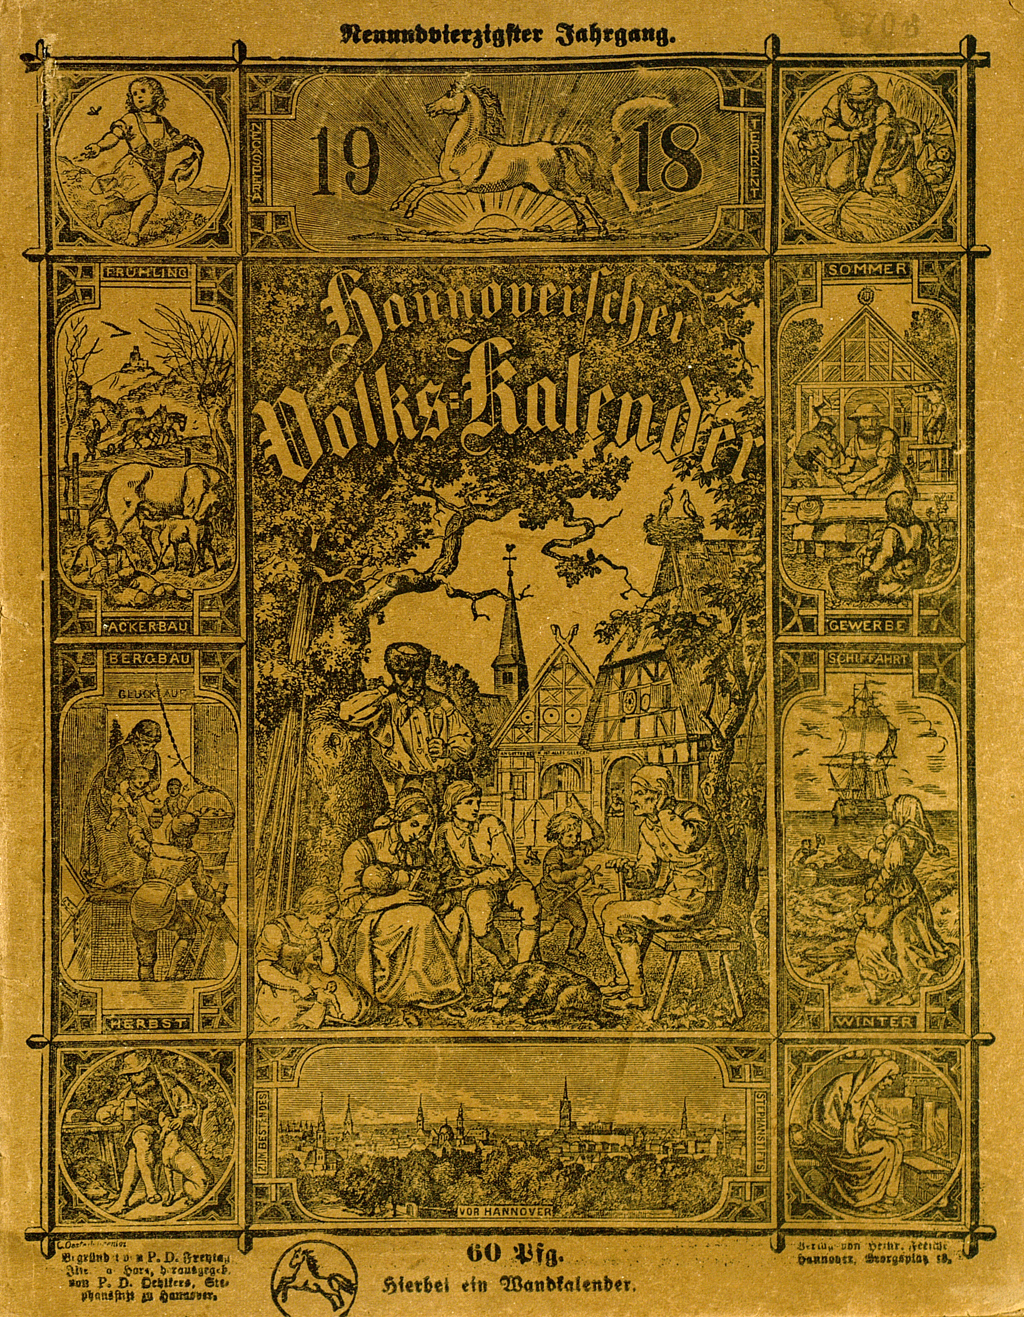 Deckblatt des "Hannoverscher Volks-Kalender" auf gelben Papier. 